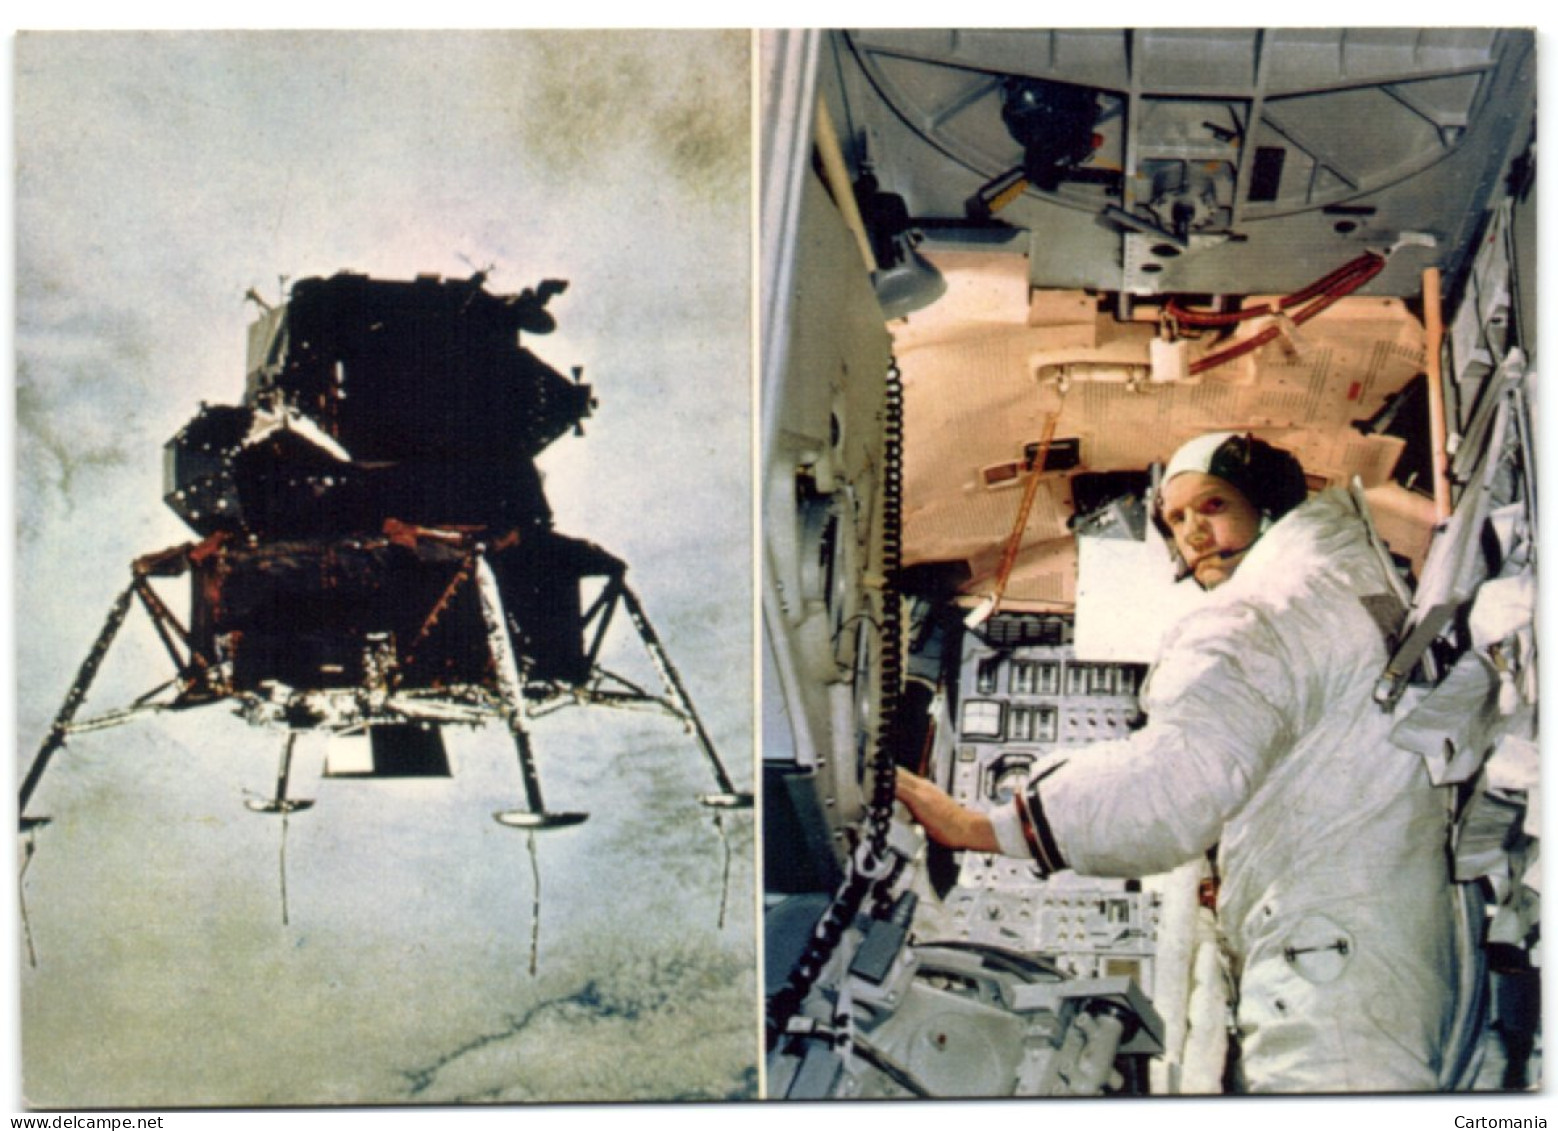 La Conquête De La Lune Par Apollo XI Du 16 Juillet Au 24 Juillet 1969 - Espace